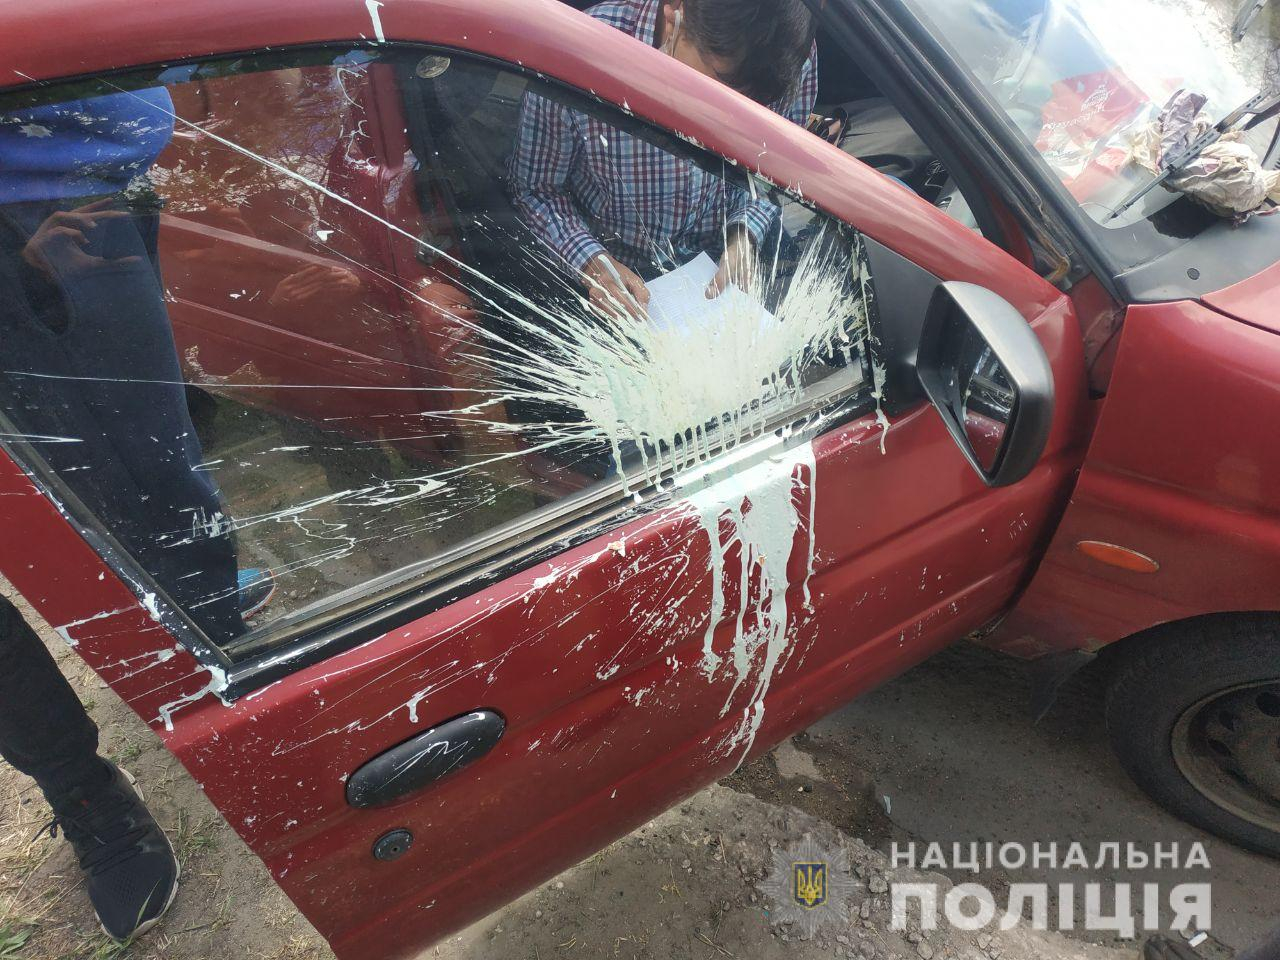 В Мариуполе машины участников автопробега забросали краской